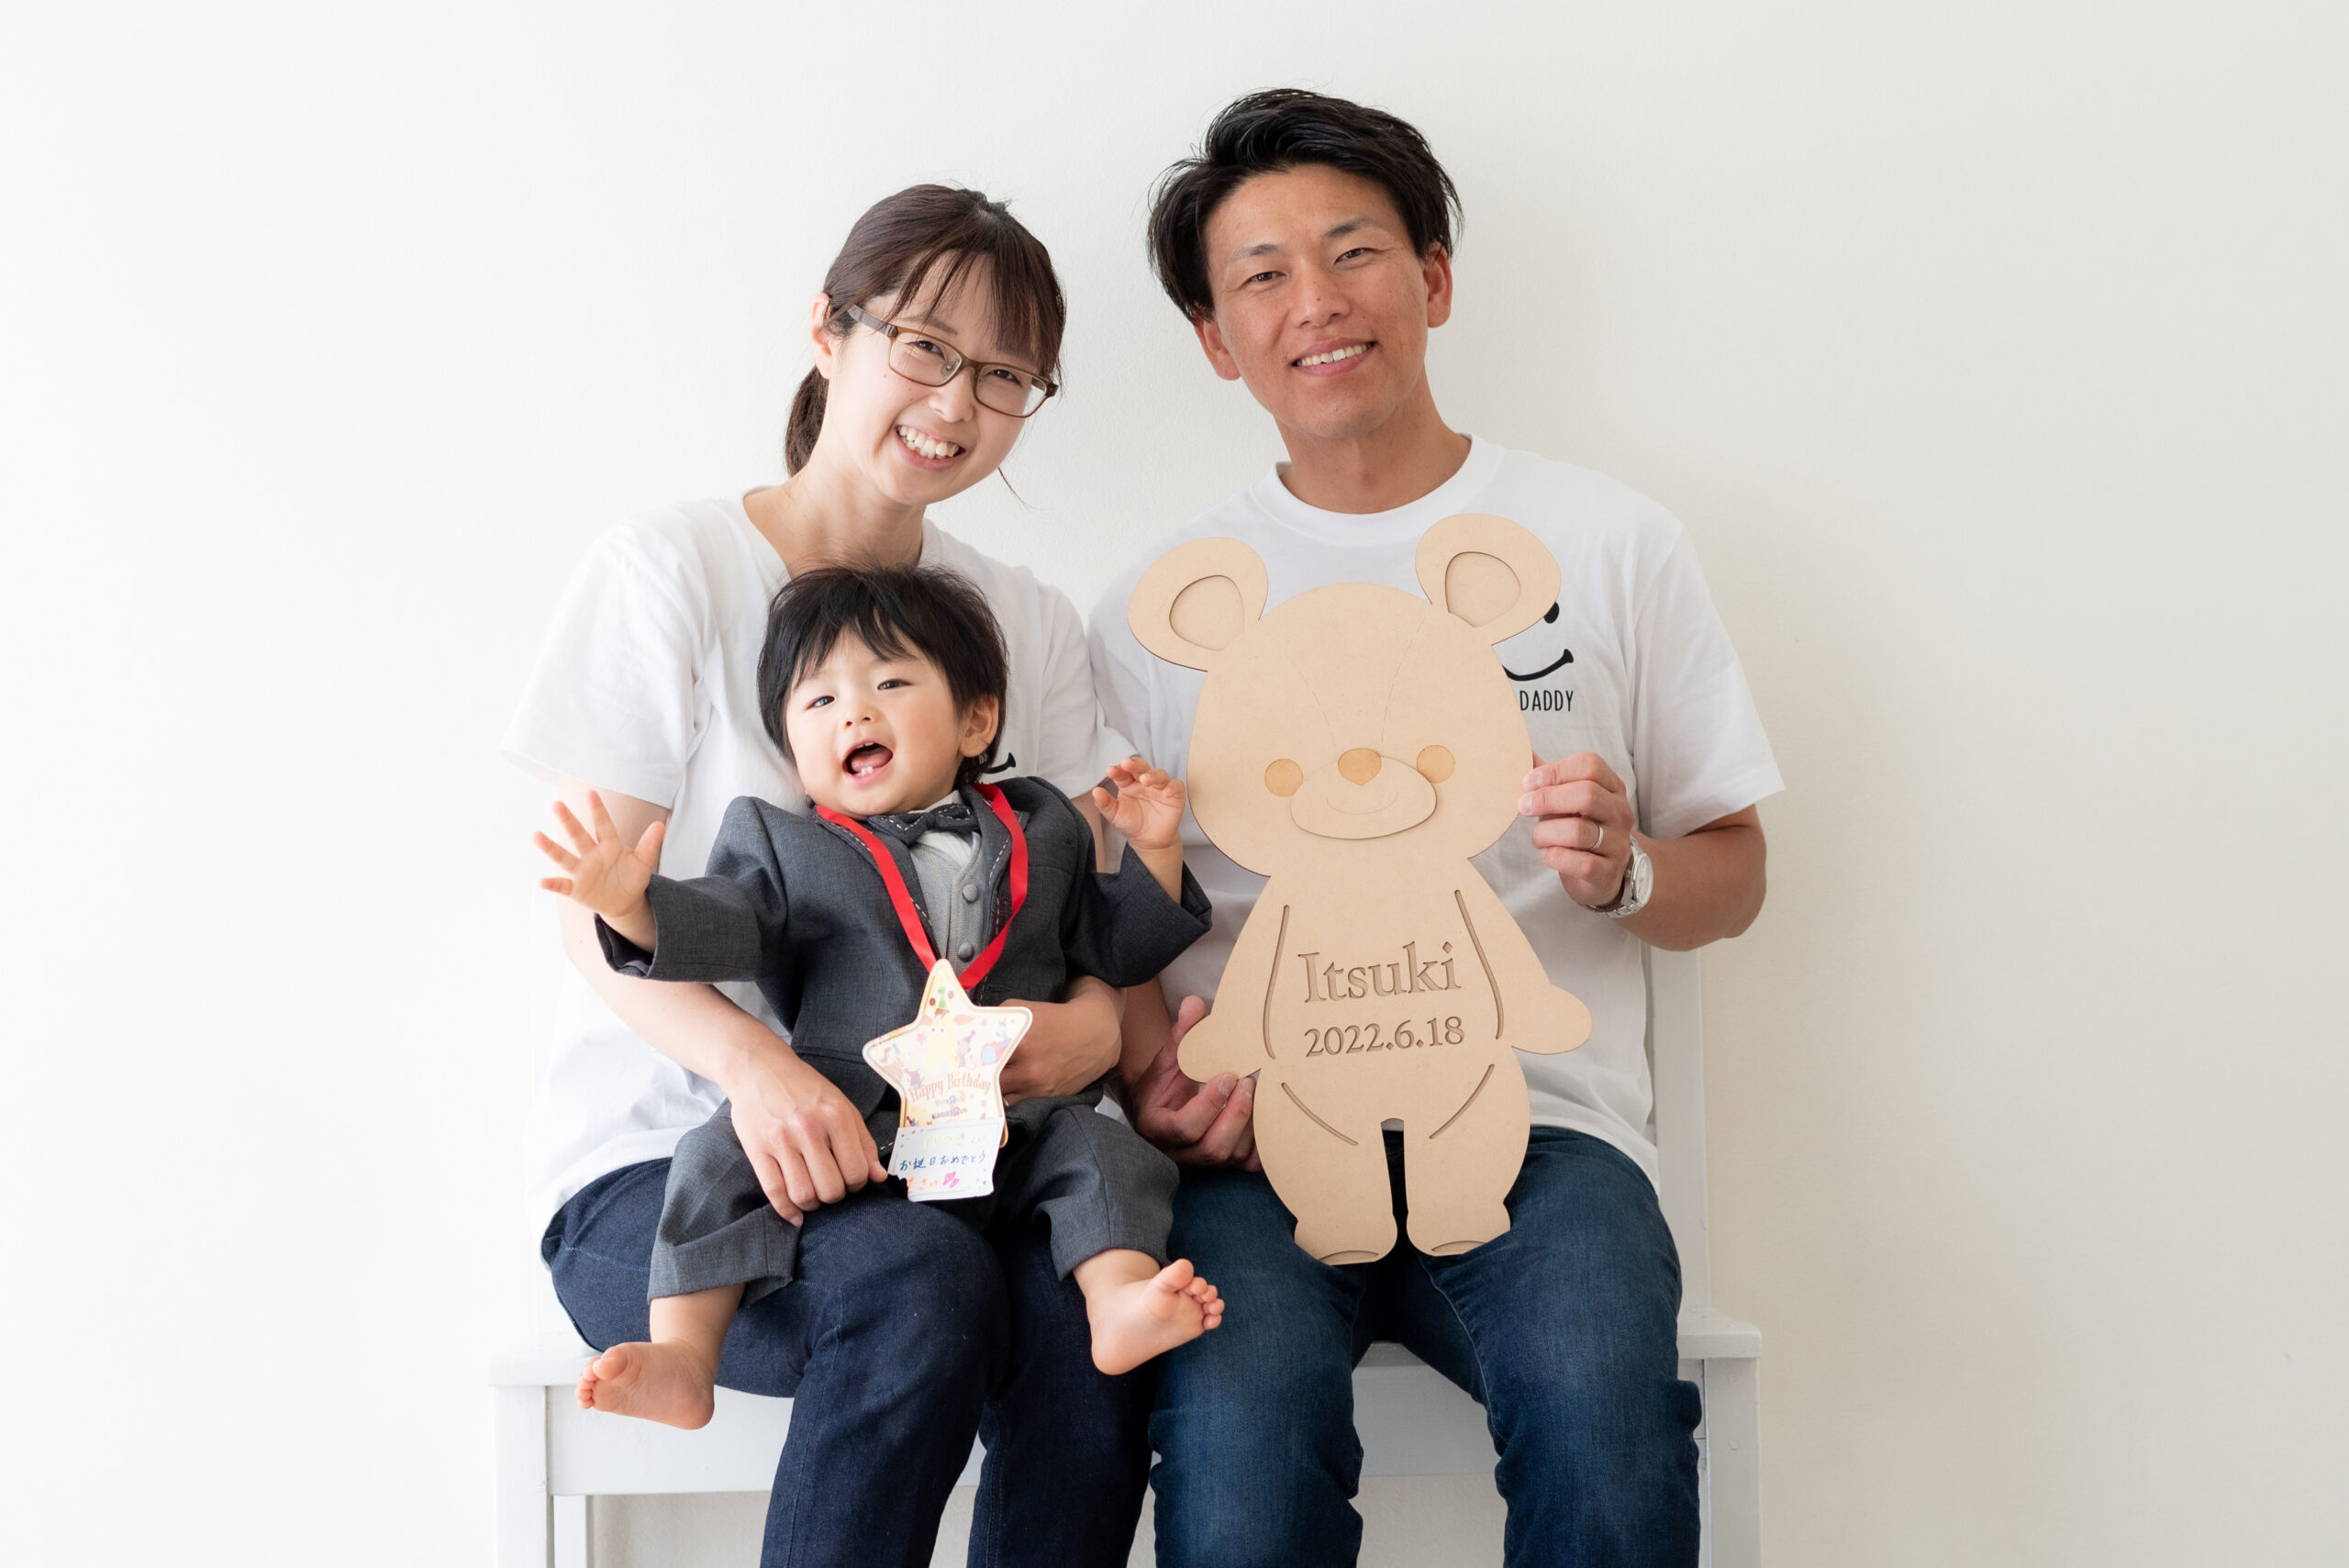 1歳の男の子とパパとママの家族写真 大きいクマさん形のお名前プレートを持っている